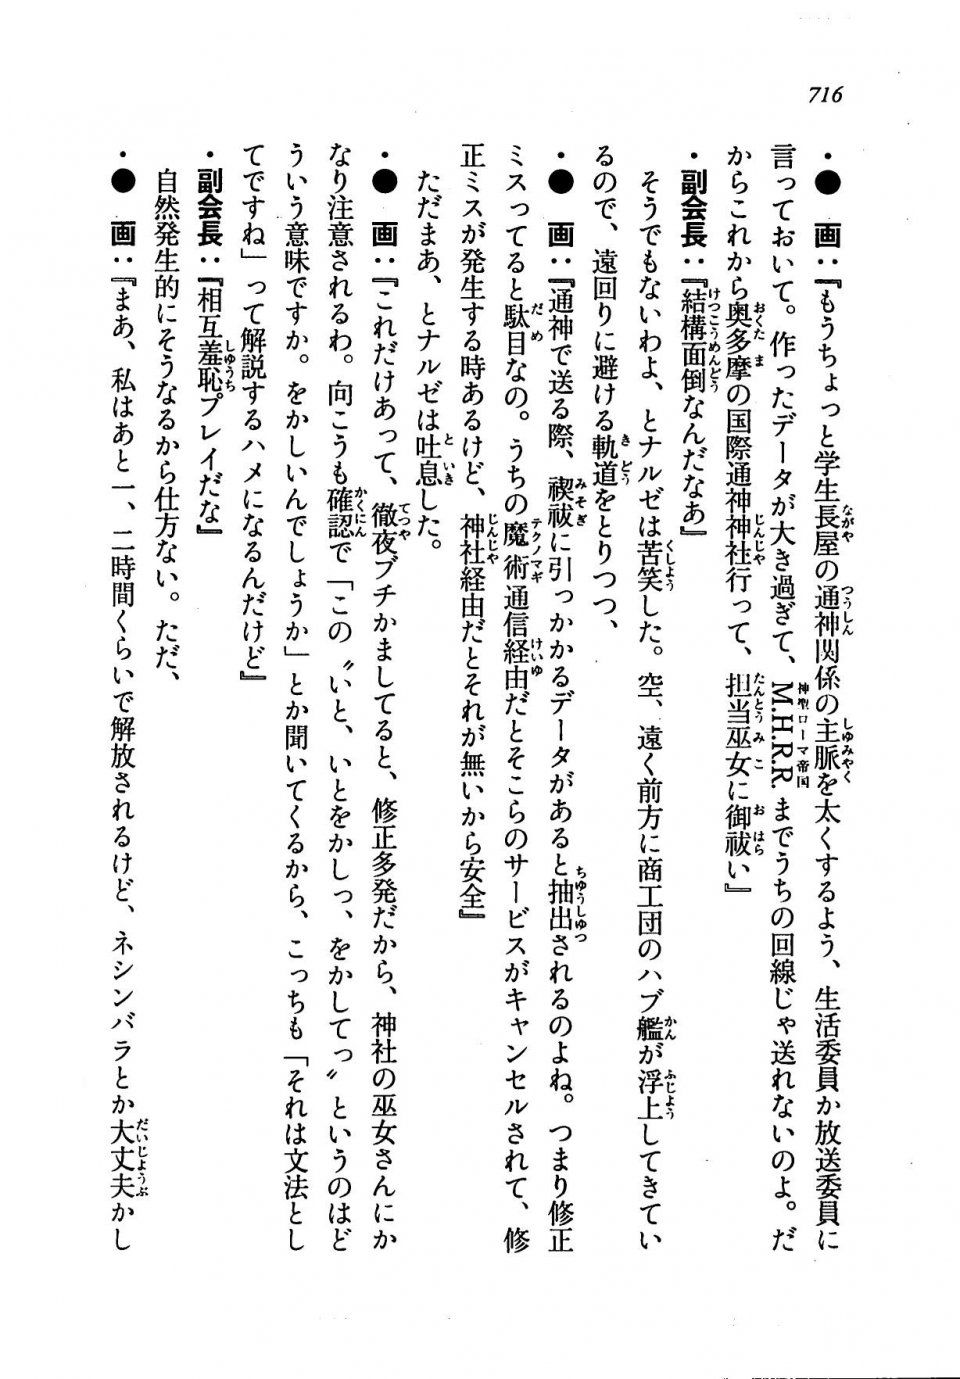 Kyoukai Senjou no Horizon LN Vol 19(8A) - Photo #716